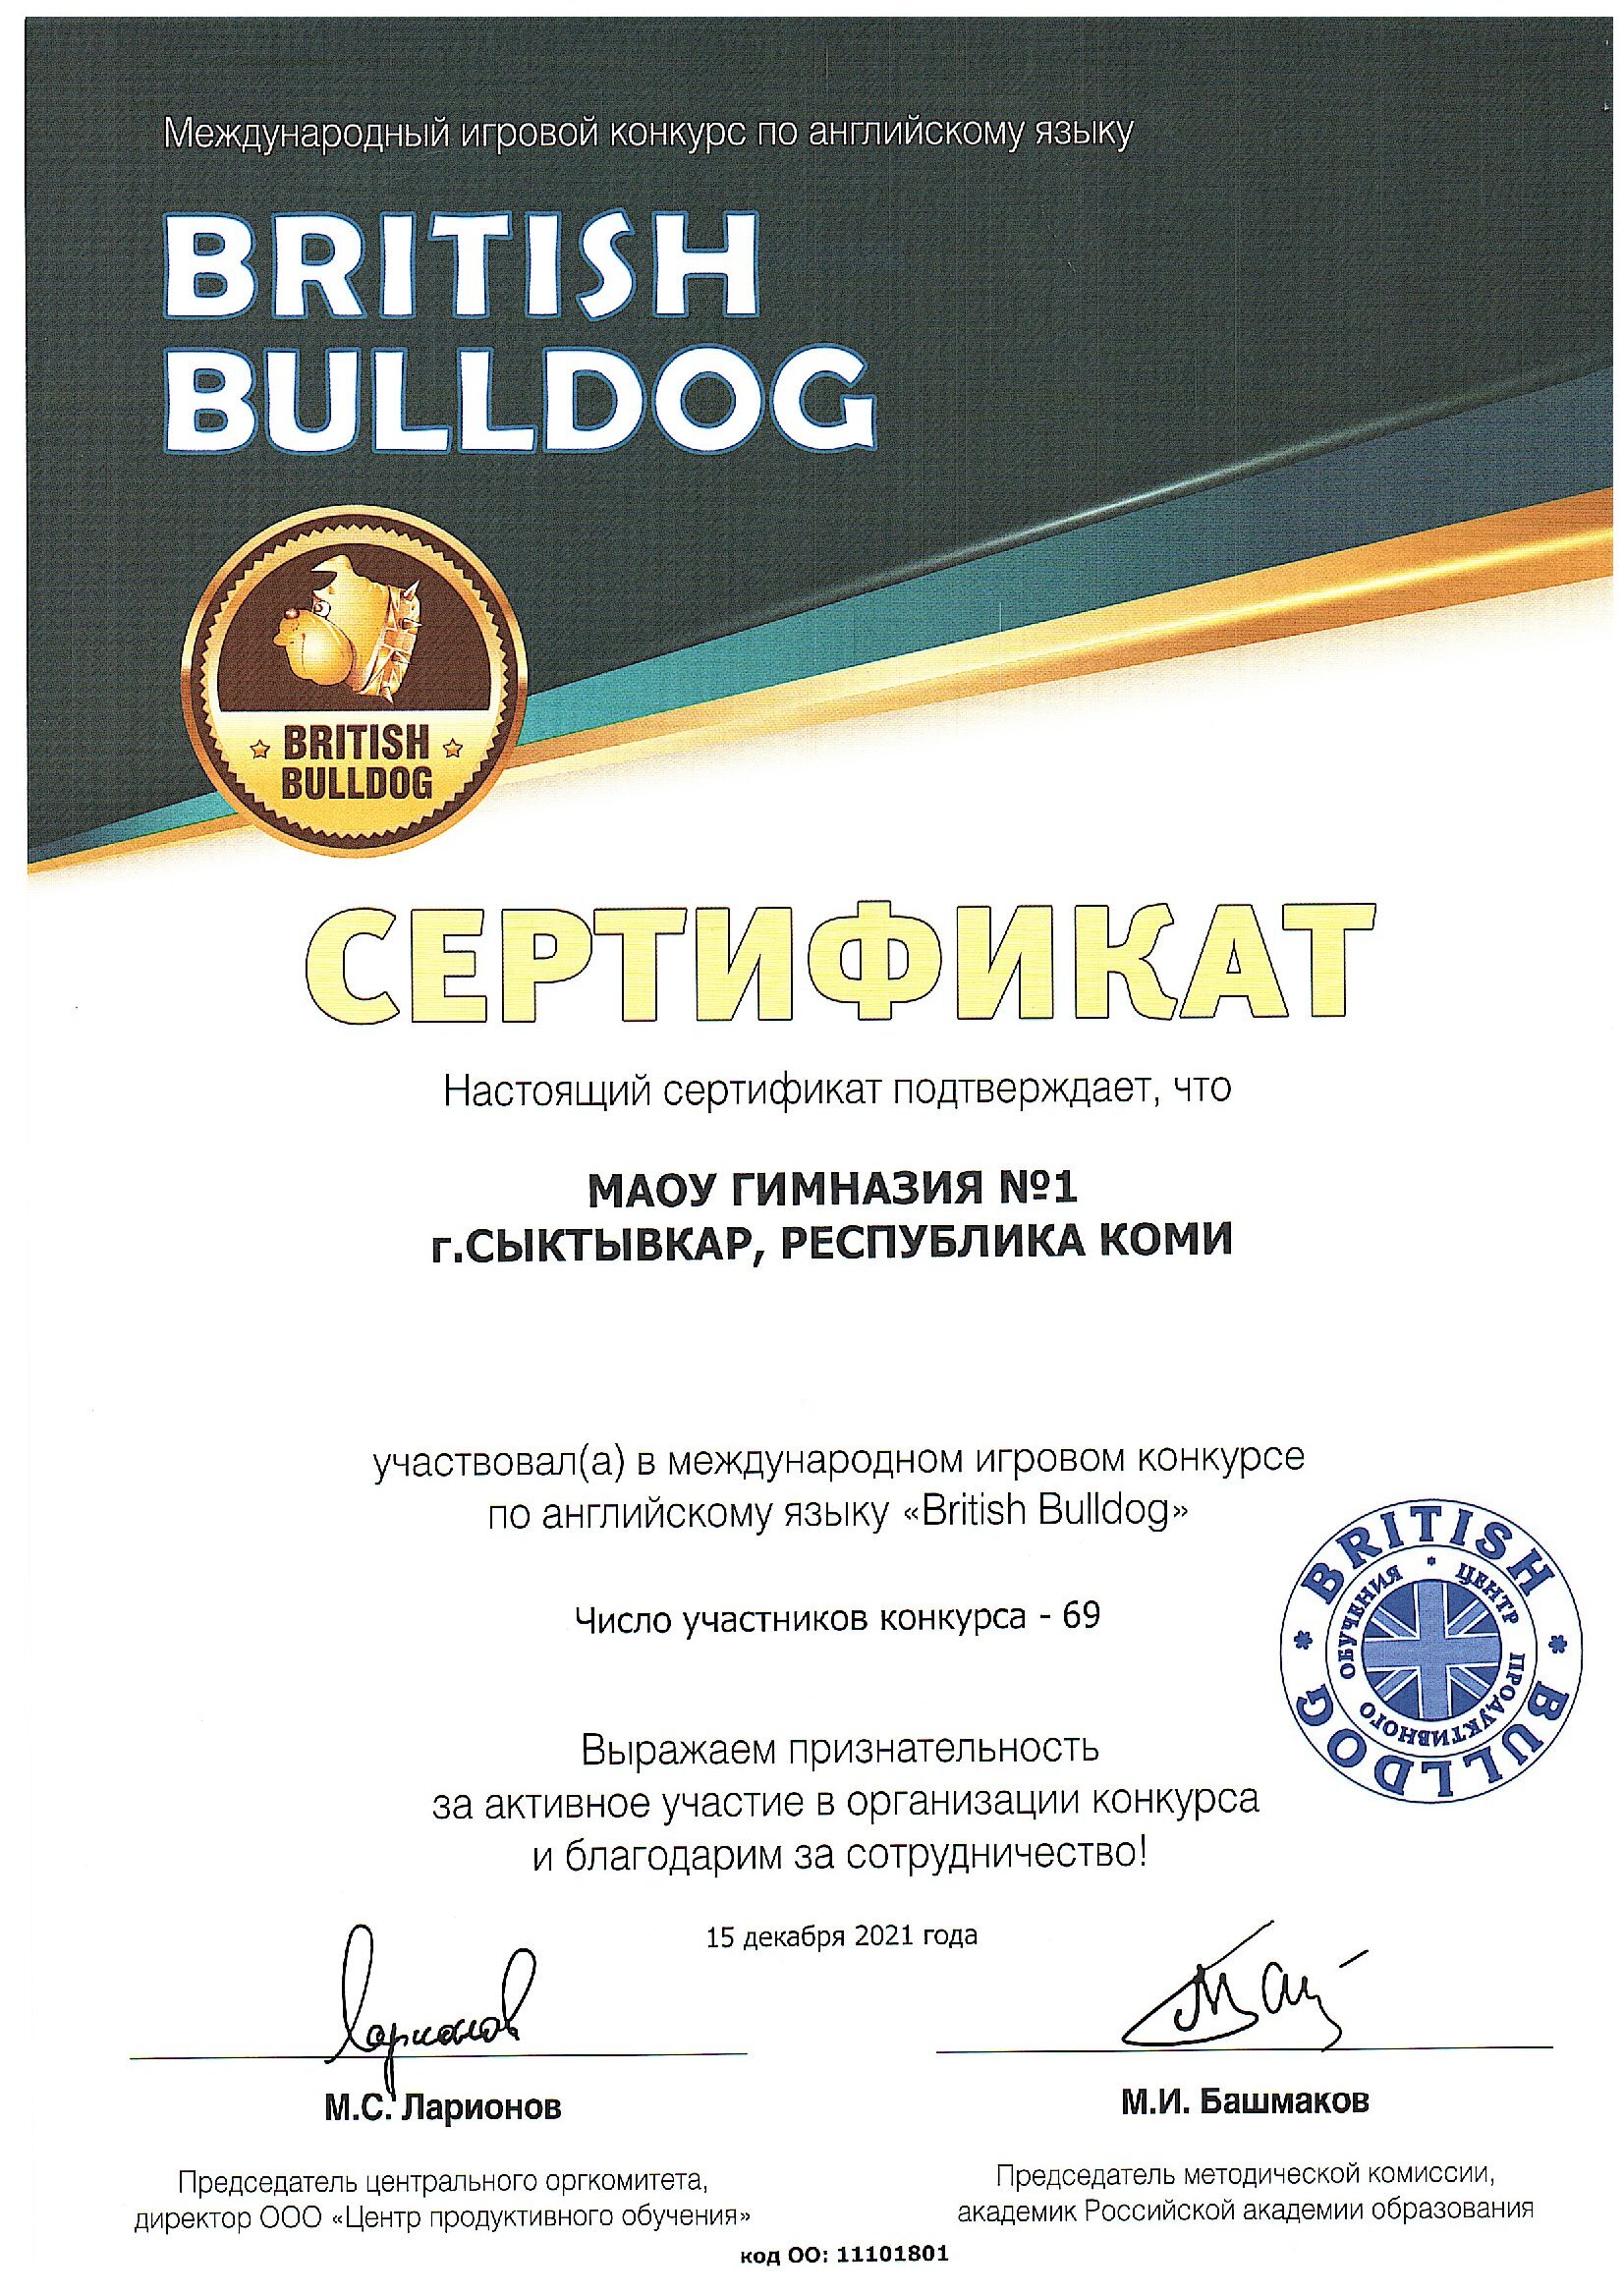 Сертификат участника в международном игровом конкурсе по английскому языку  British Bulldog 2021.